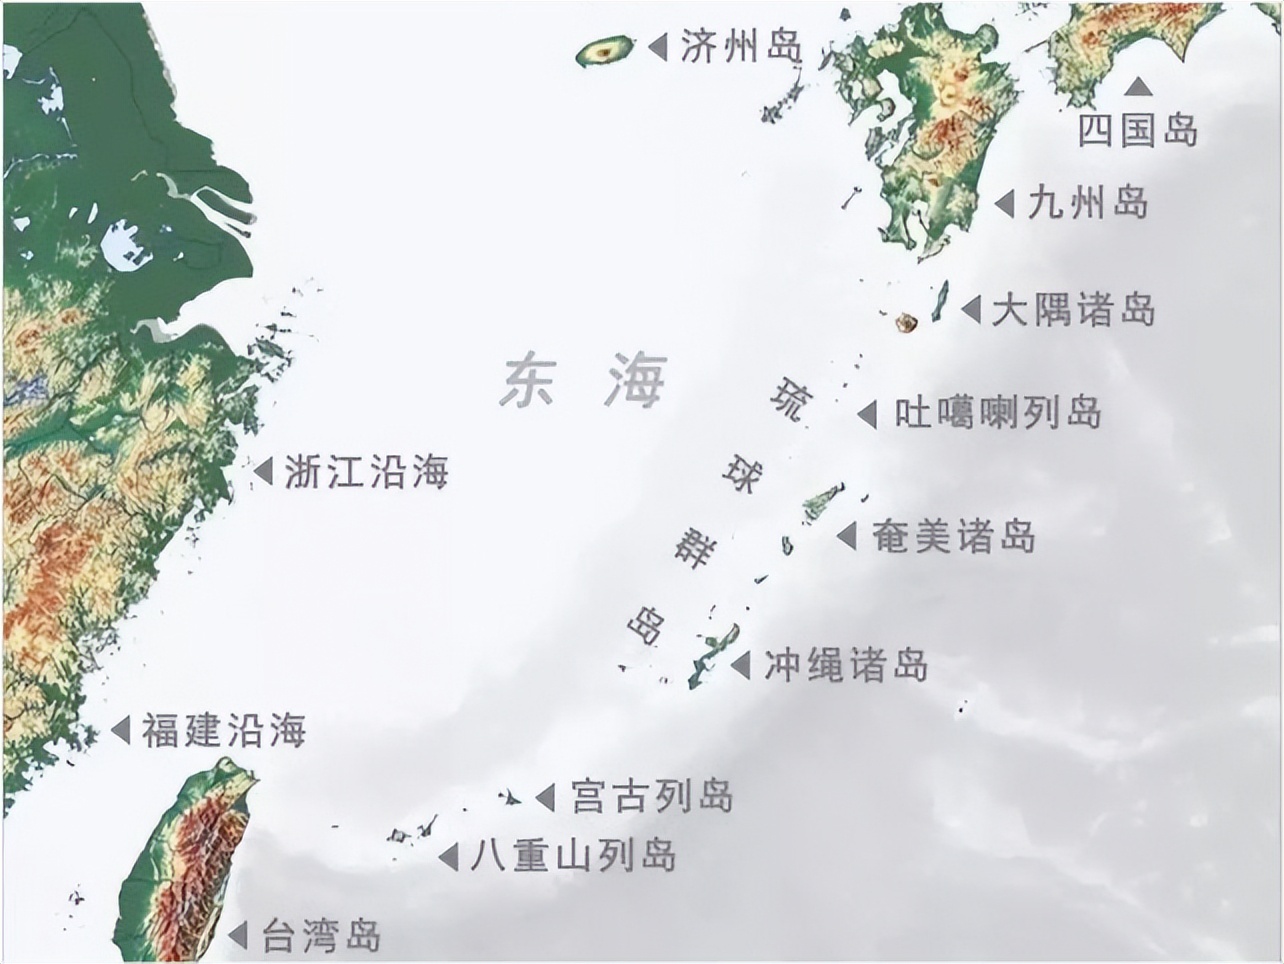 琉球群岛为何由日本管辖?假如回归我国,将给划归哪个省份管辖?